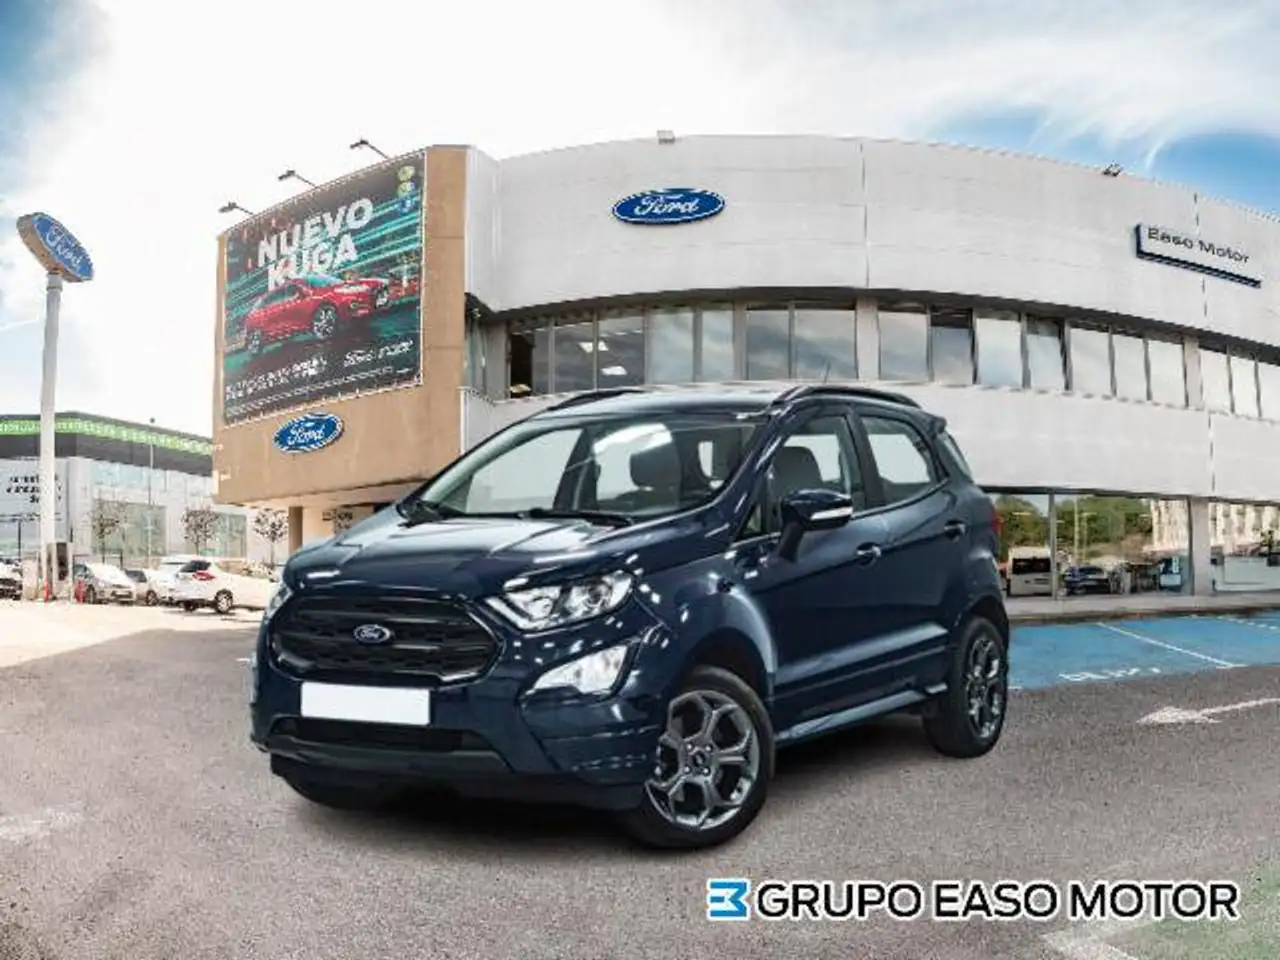 Ford EcoSport SUV/4x4/Pick-up in Blauw tweedehands in Galdakao voor € 13.900,-